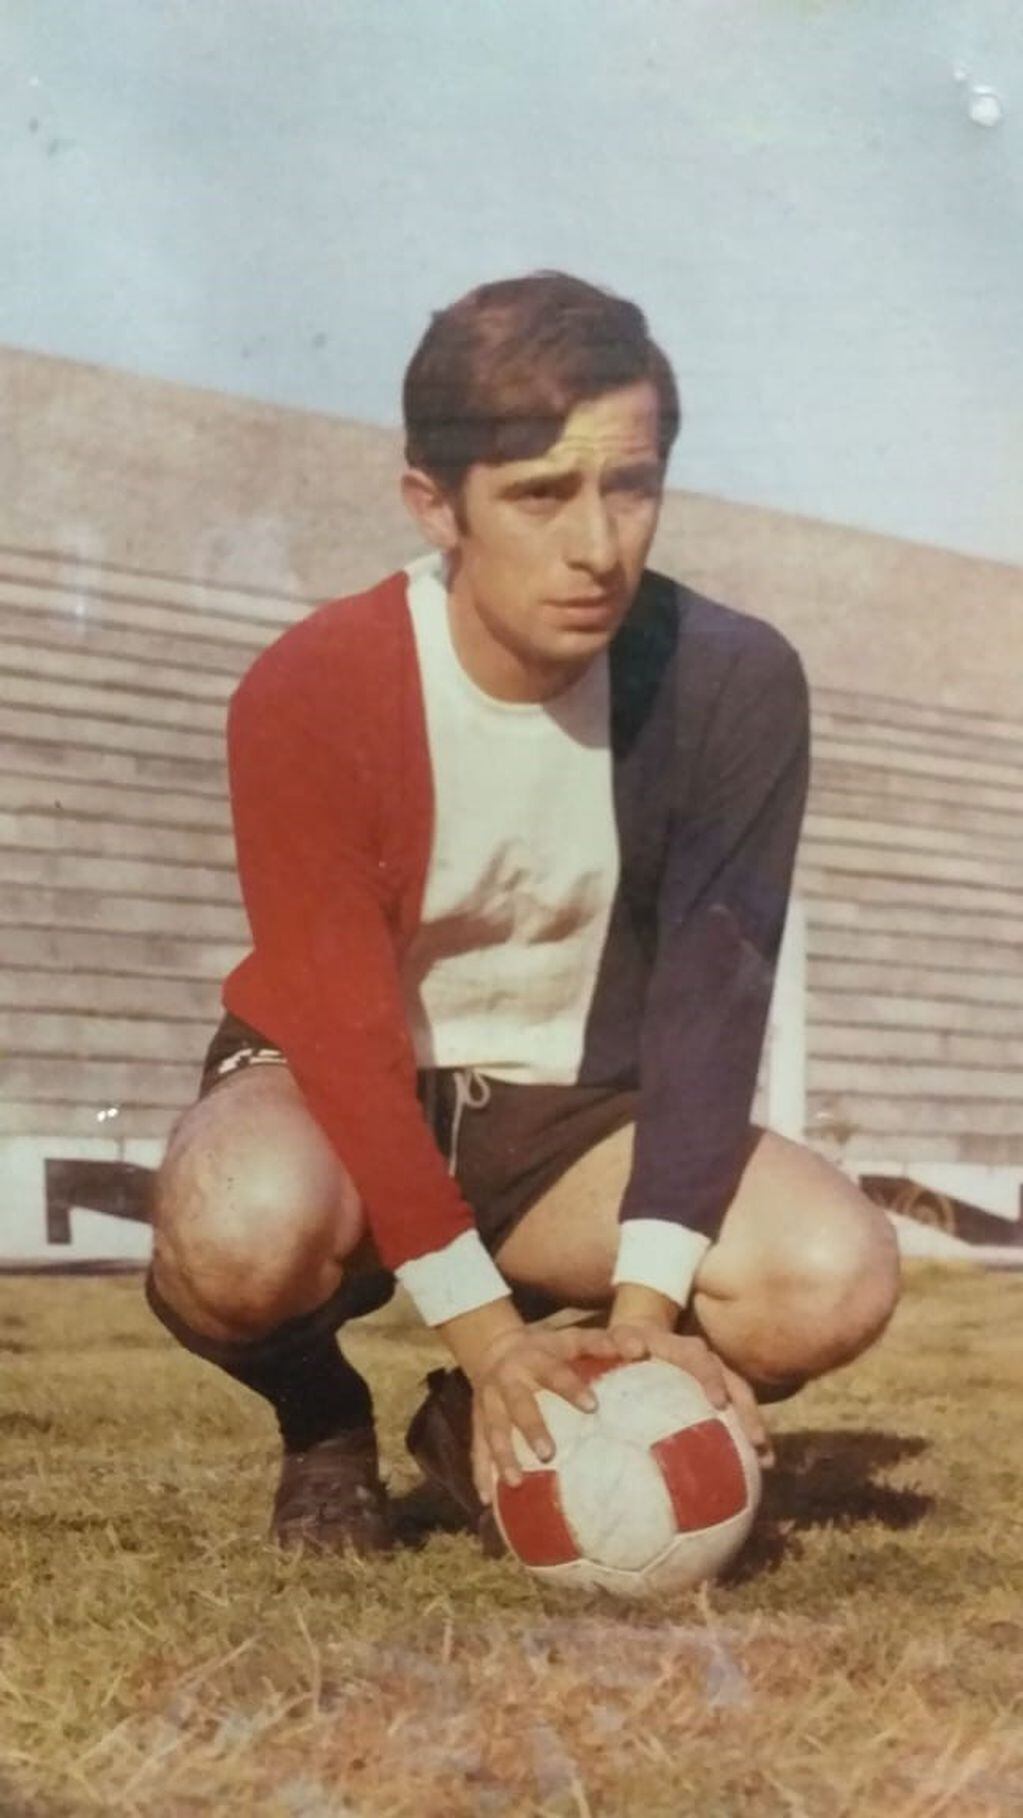 Roberto Gestoso